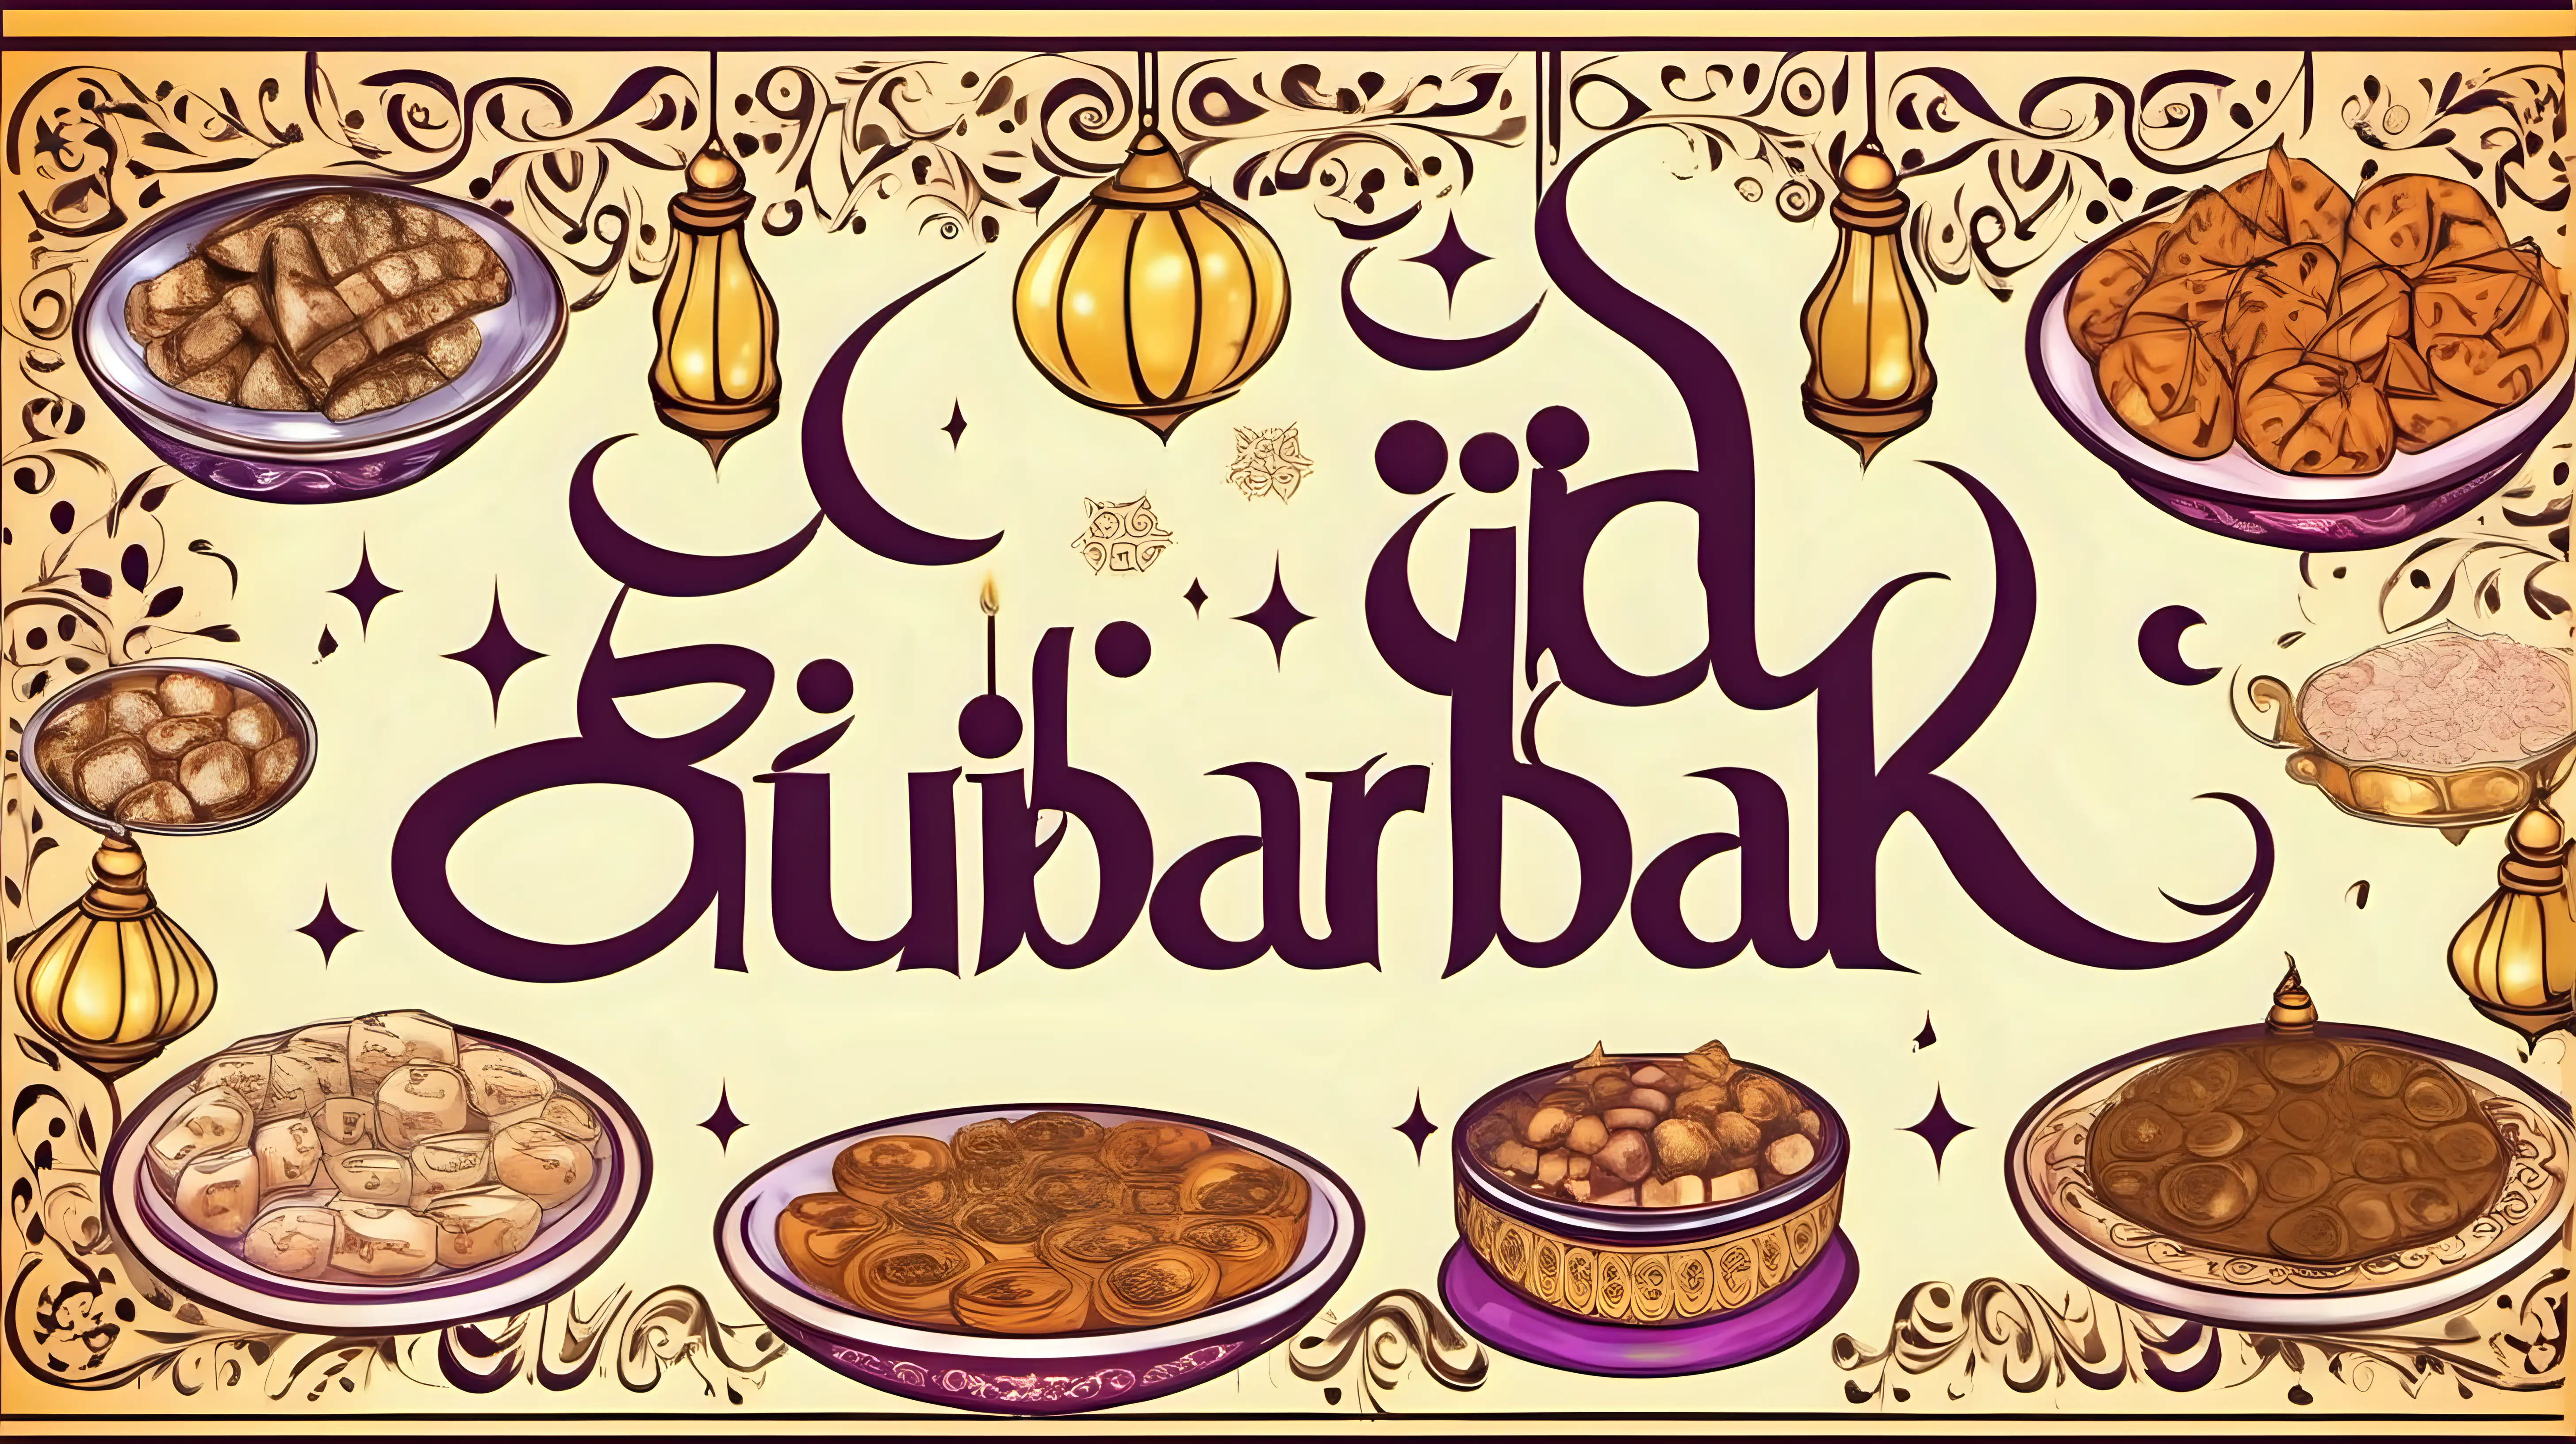 Eid Mubarak Celebration with Elegant Calligraphy and Festive Dishes